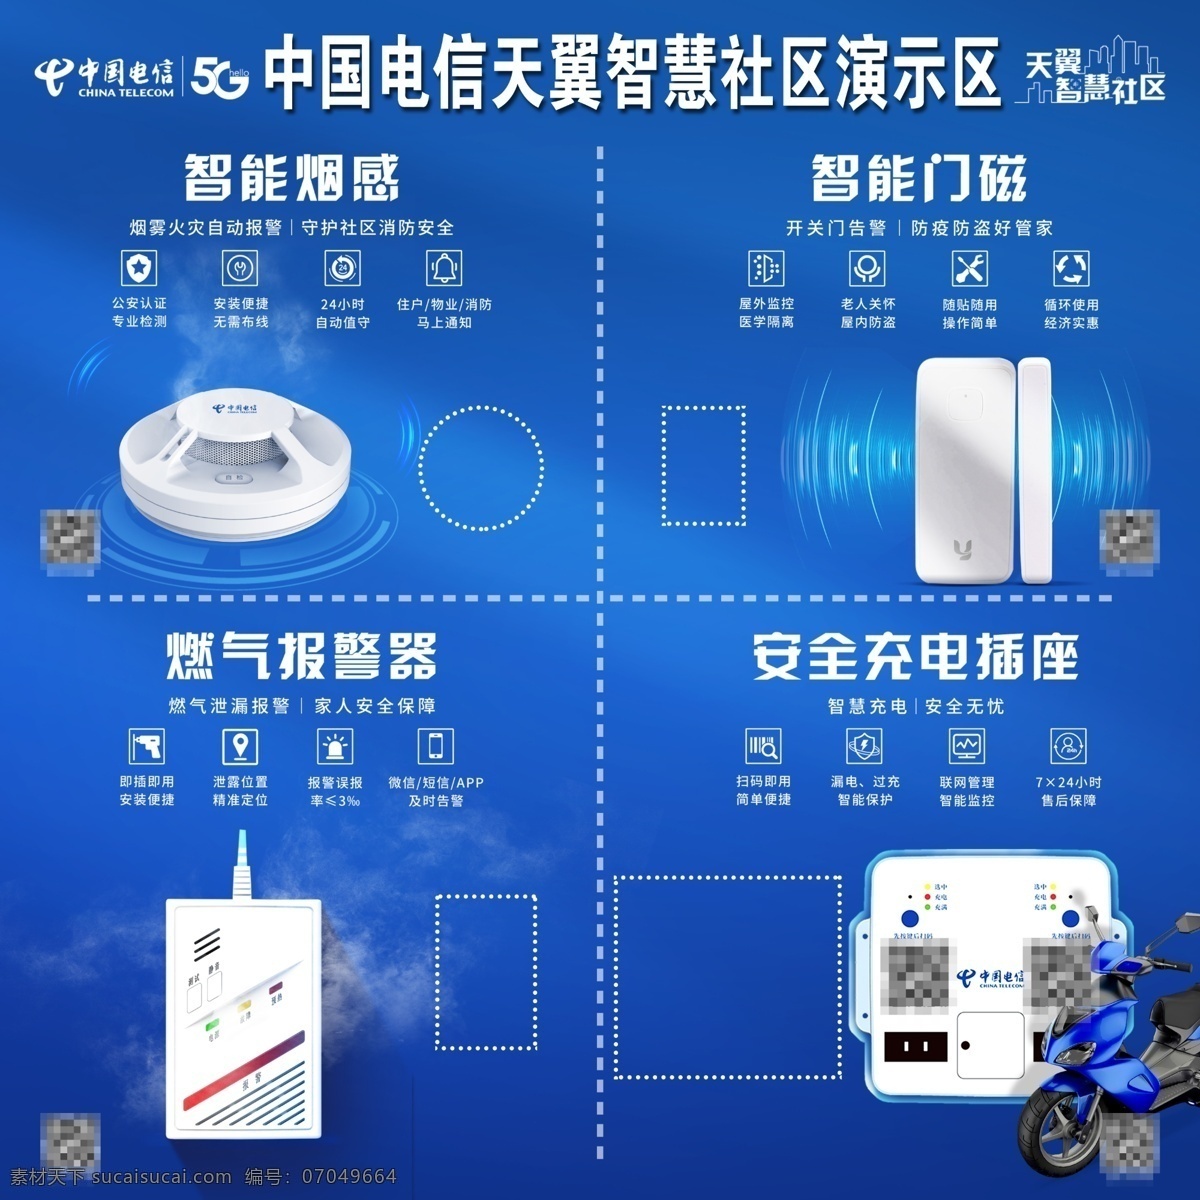 中国电信 天翼 智慧社区 智能烟感 智能门磁 燃气报警器 充电插座 电动车 蓝色背景